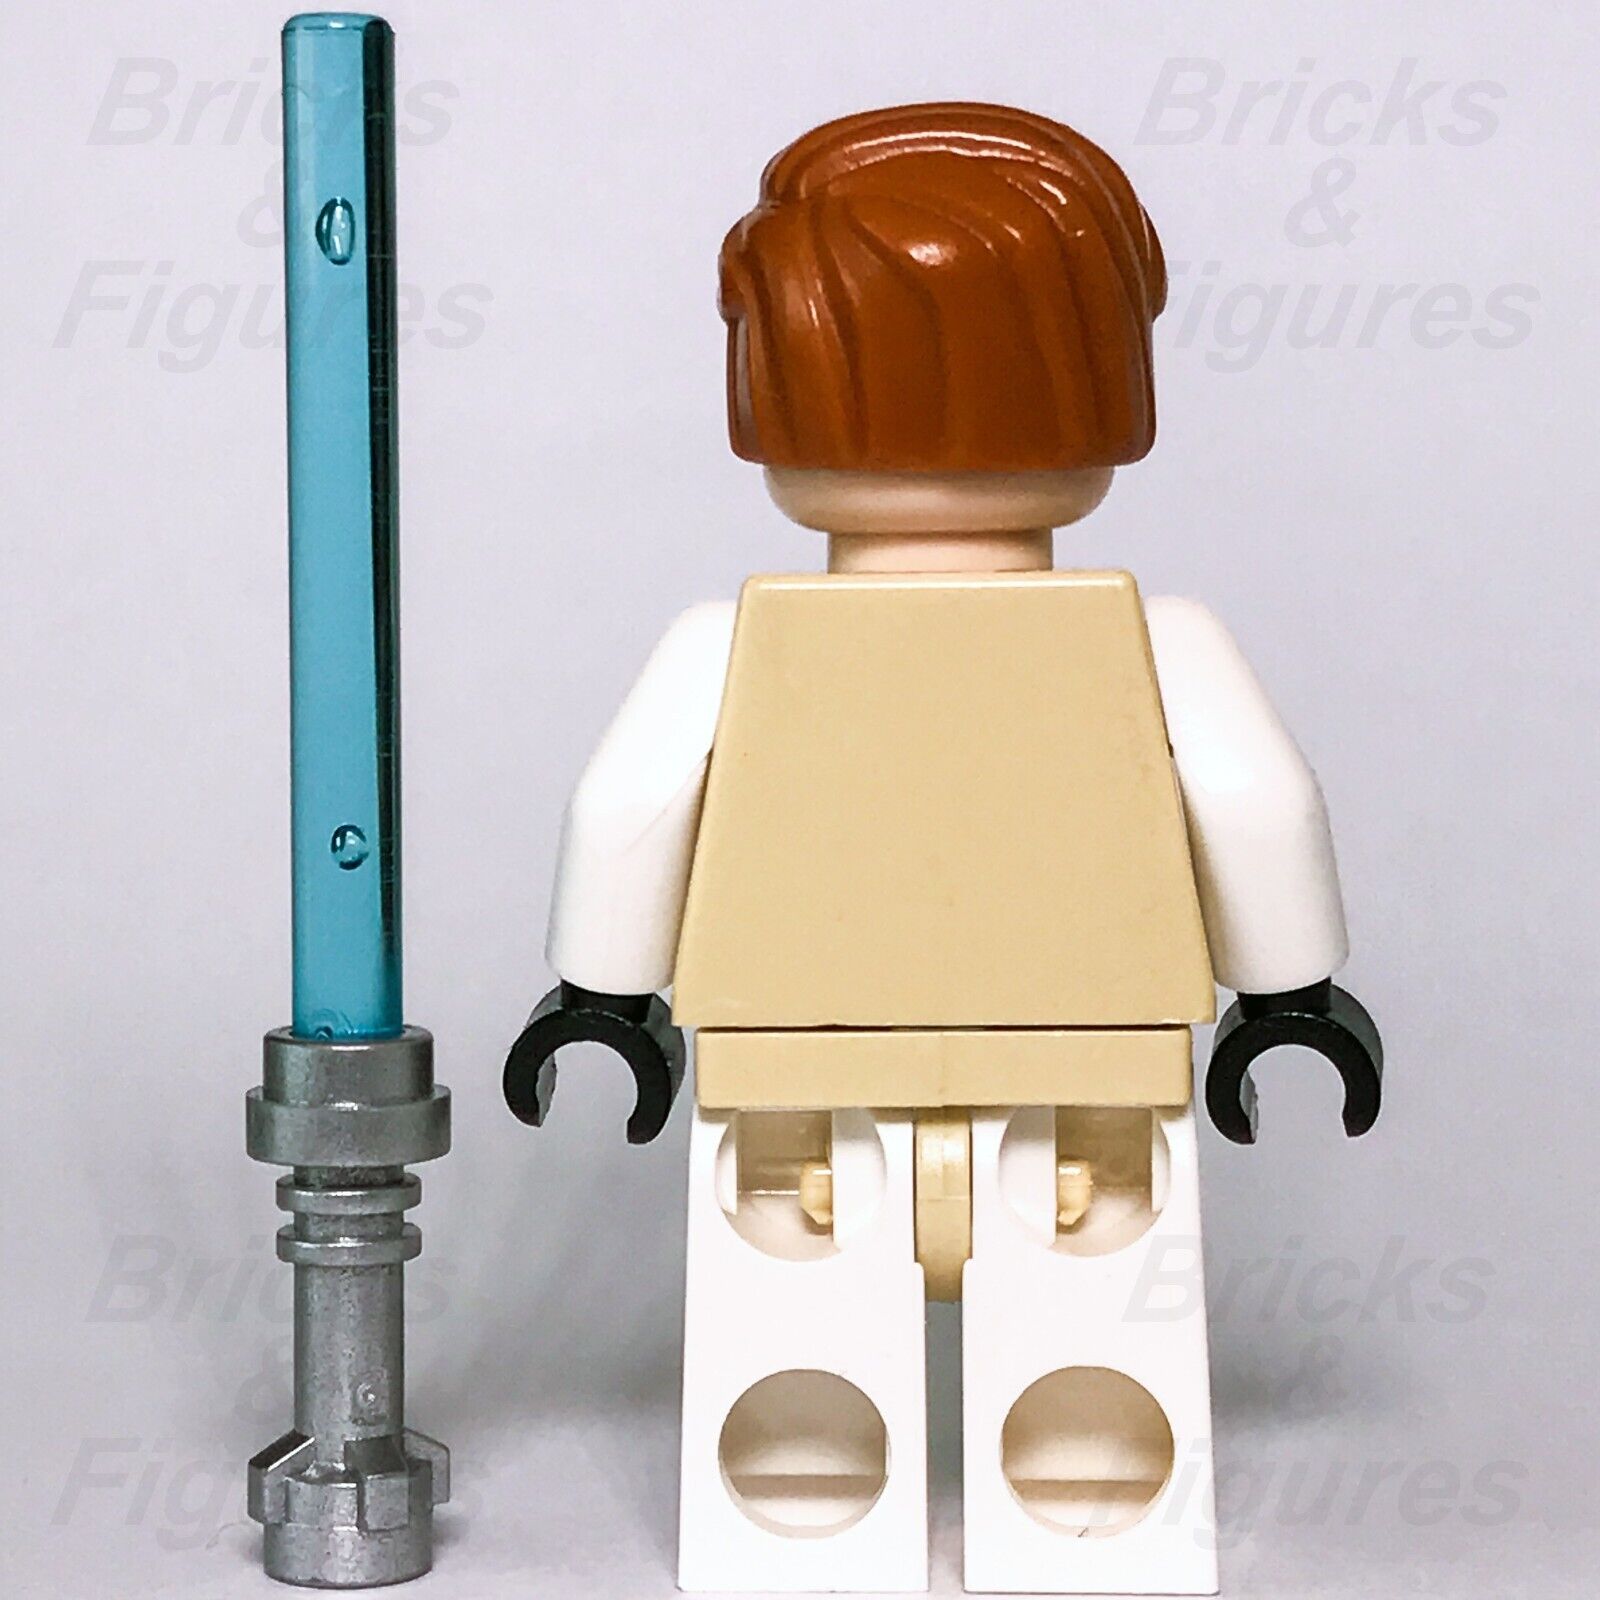 Star Wars LEGO Obi-Wan Kenobi Minifigure Clone Wars Jedi 7753 9525 7931 7676 - Bricks & Figures